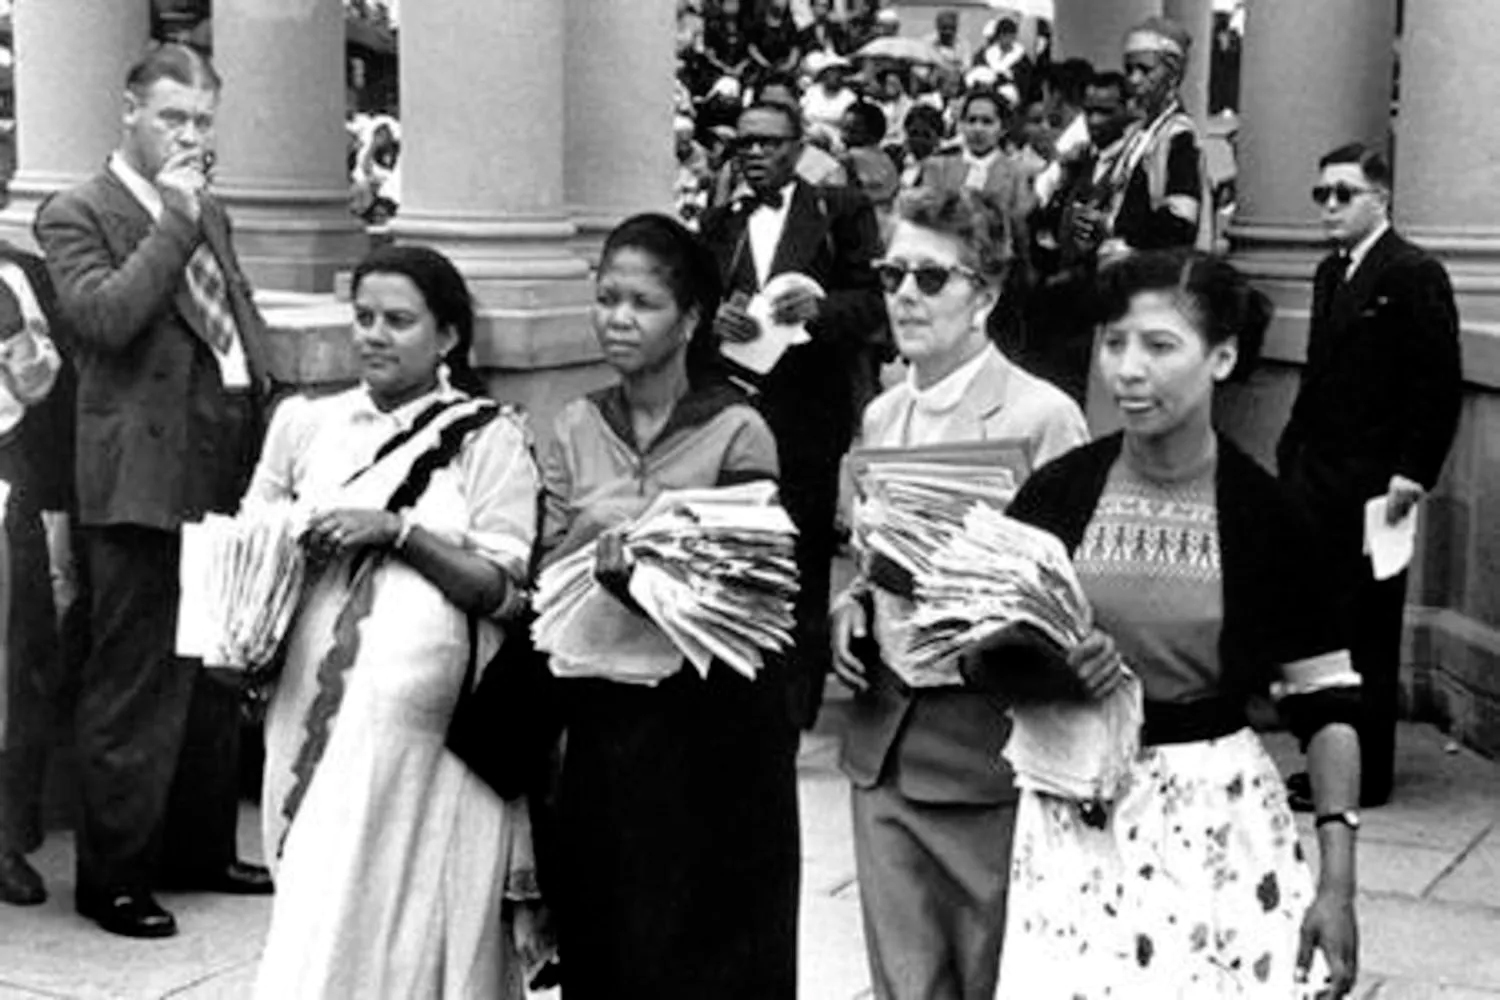 1956 women's march